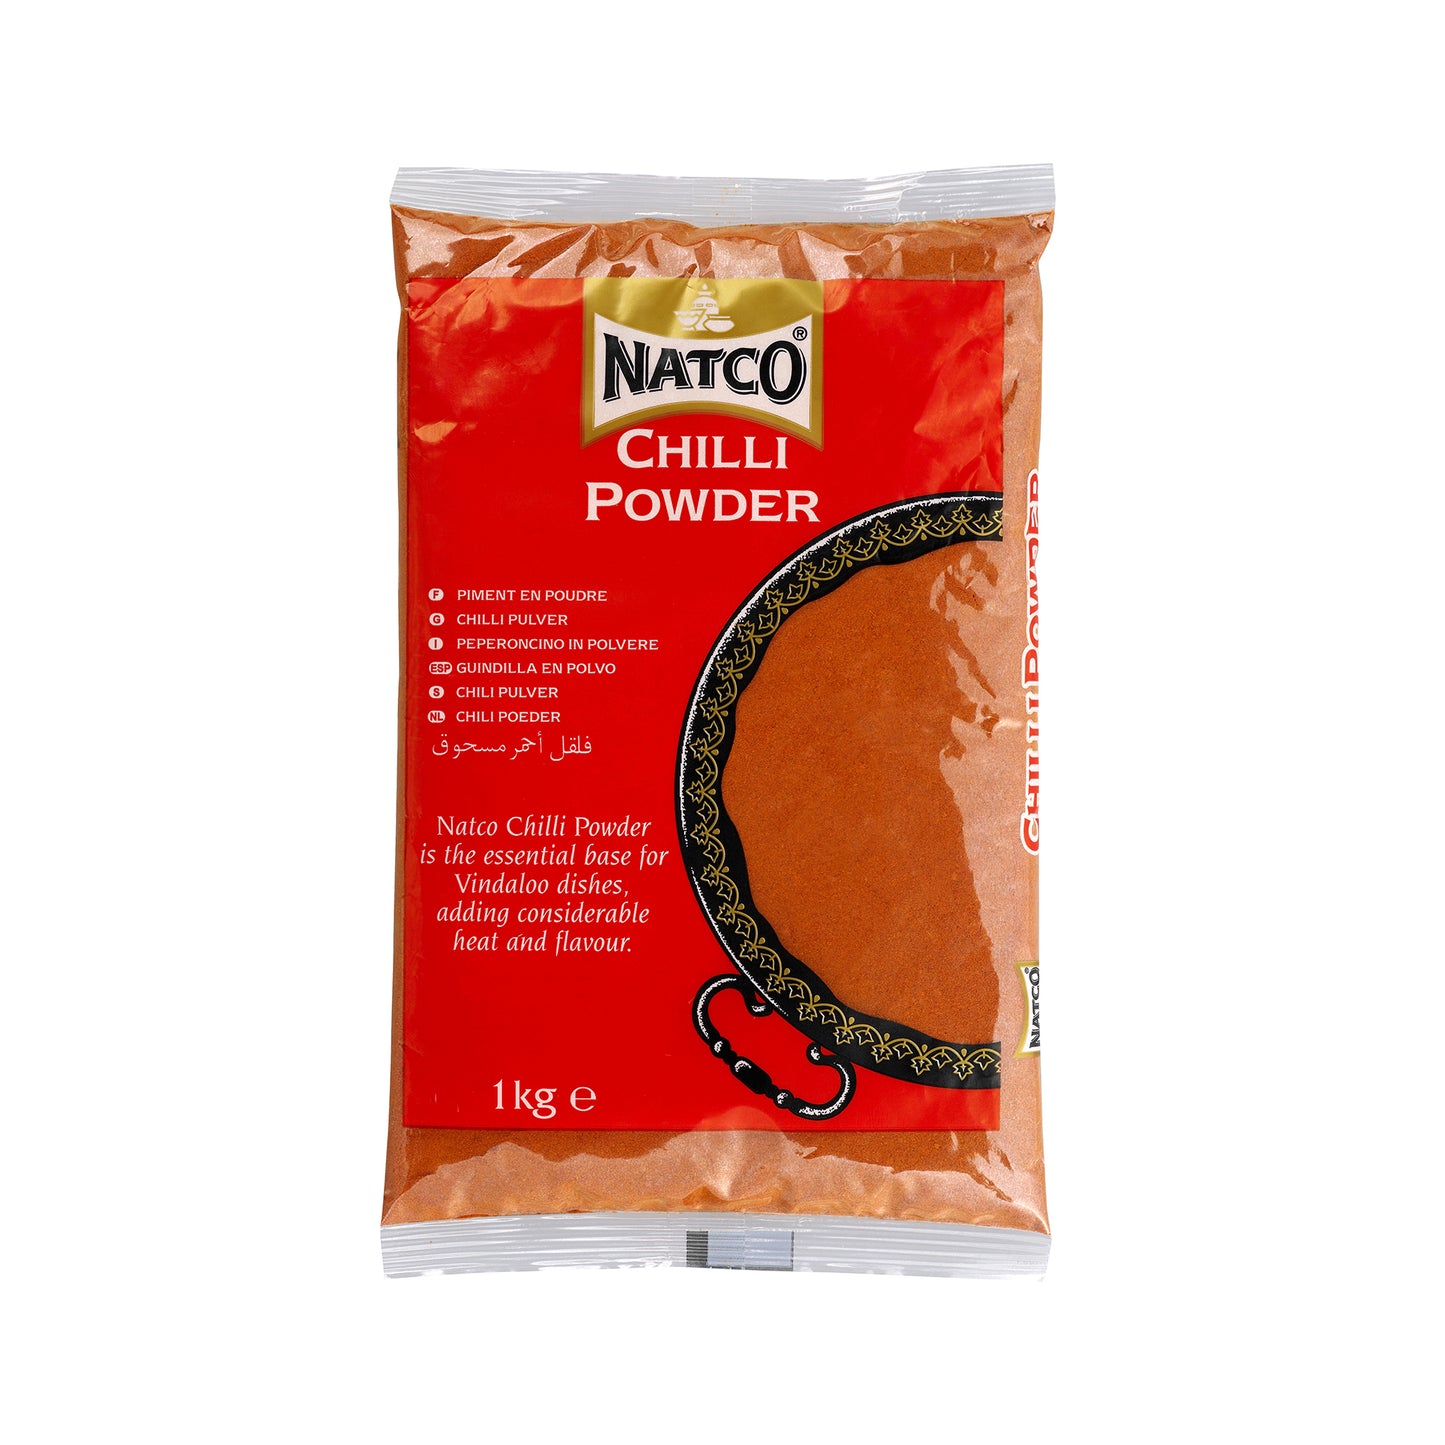 Chilli Powder 1kg